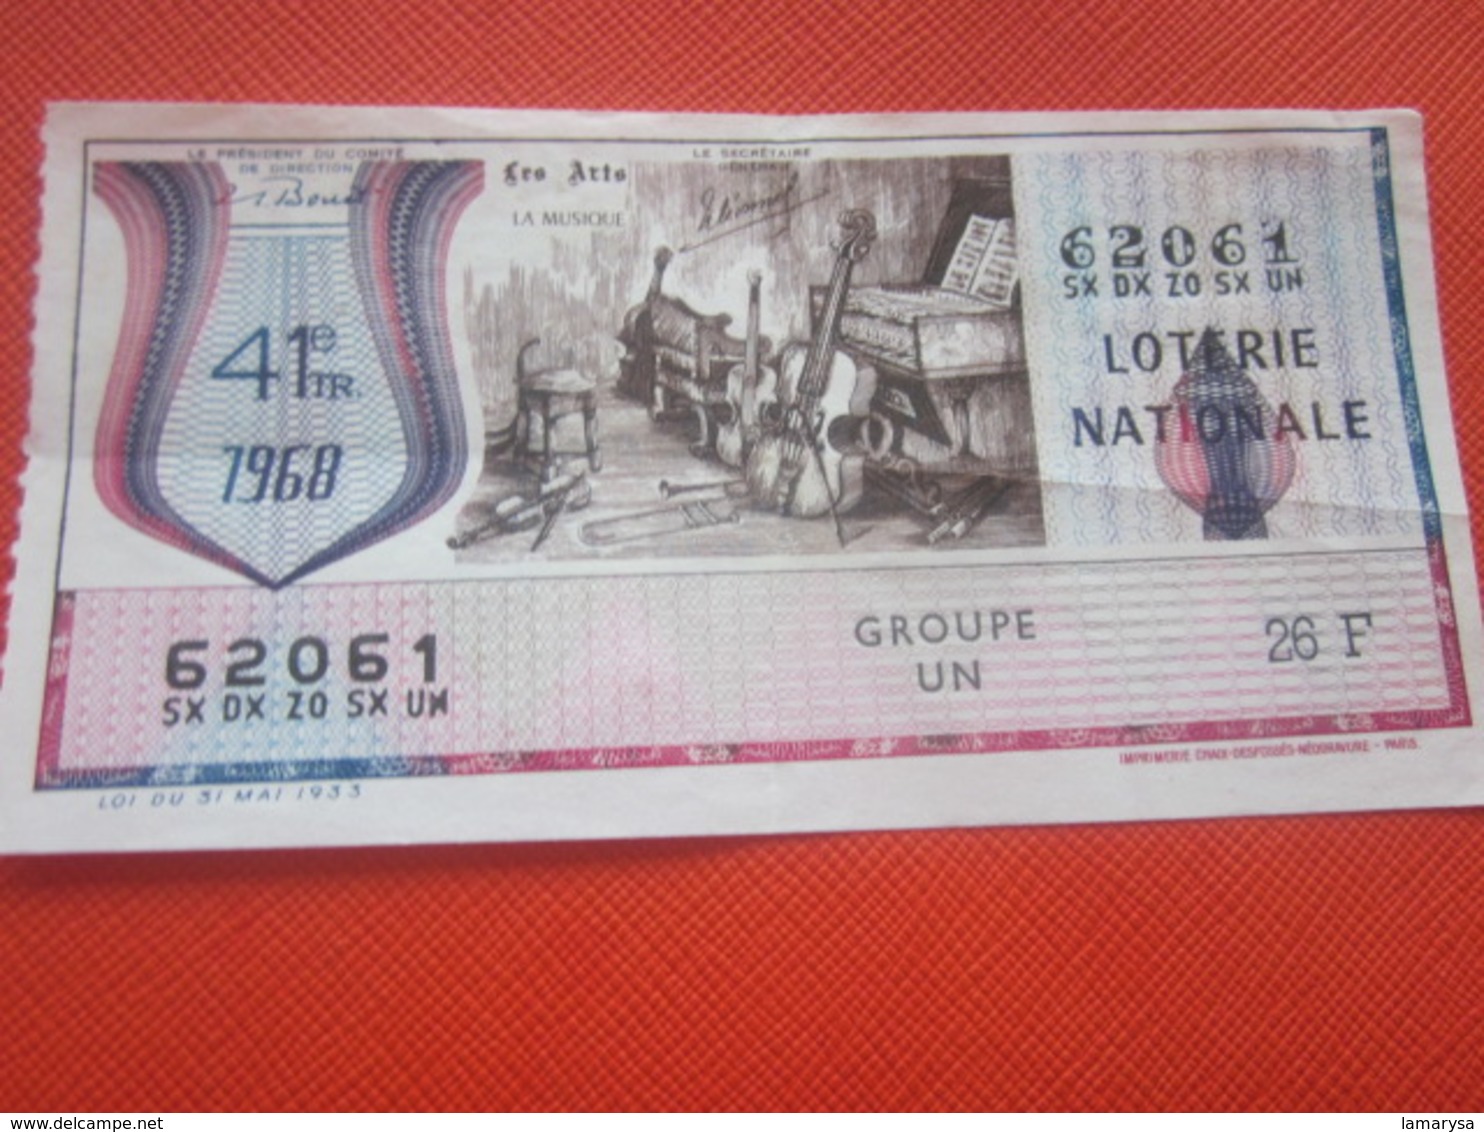 LES ARTS LA MUSIQUE VIOLONCELLE PIANO -Année 1968 -Billet De La Loterie Nationale-imprimé En Taille Douce - Billets De Loterie